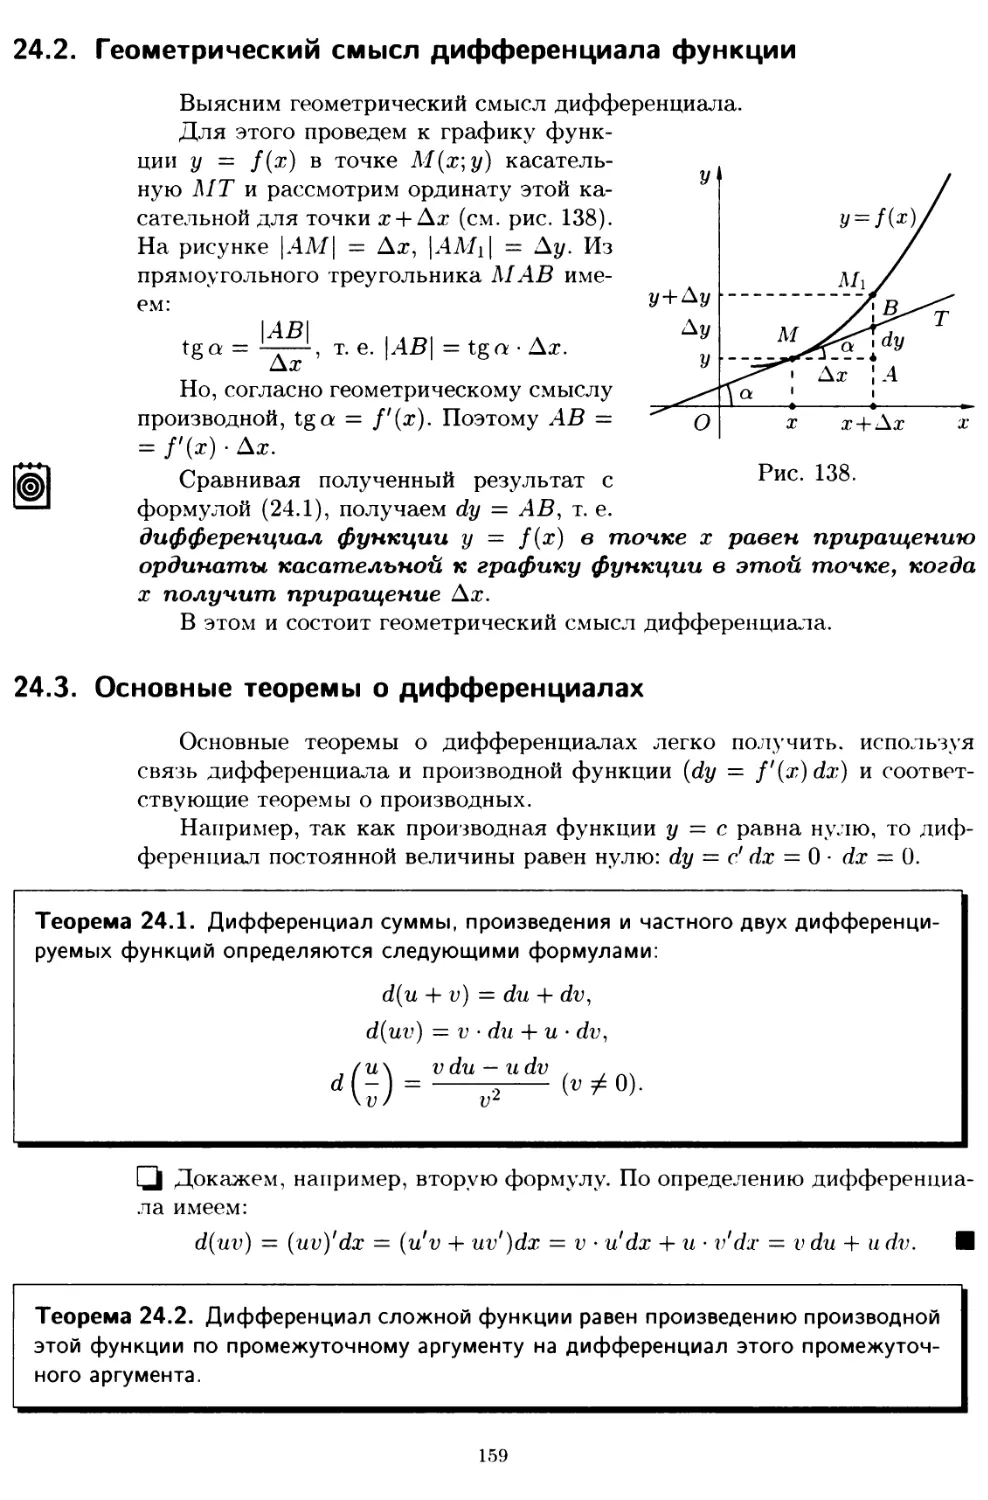 24.2. Геометрический смысл дифференциала функции
24.3. Основные теоремы о дифференциалах